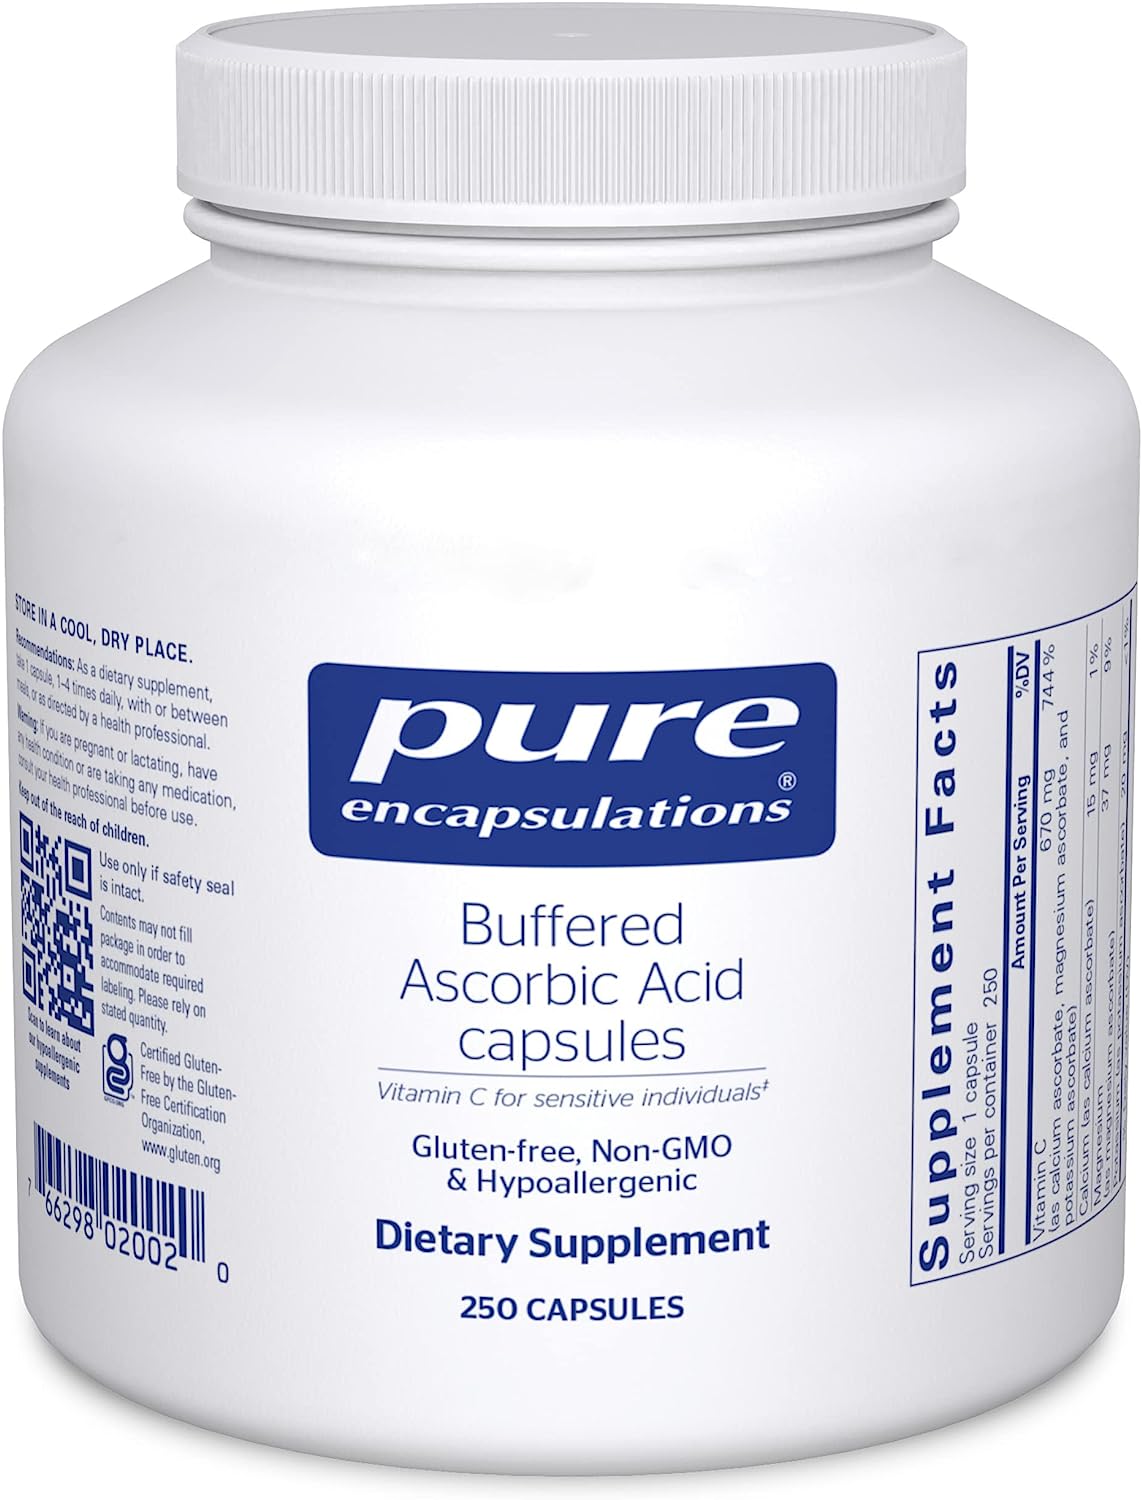 Pure Encapsulations Buffered Ascorbic Acid Capsules | Vitamin C for Sensitive Individuals* | 250 Capsules